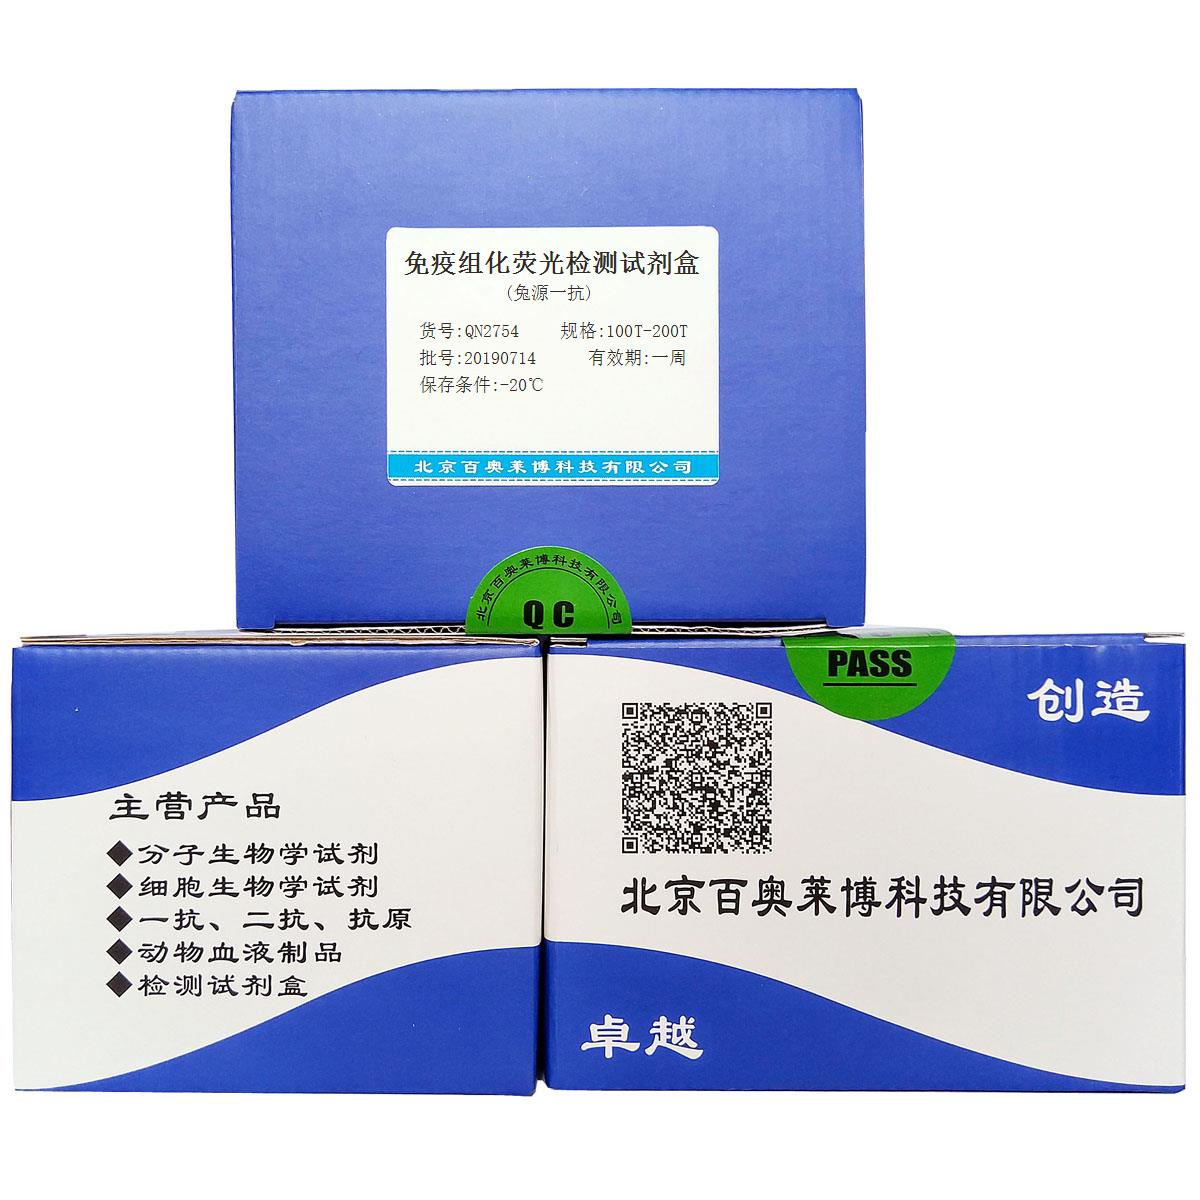 免疫组化荧光检测试剂盒(兔源一抗)报价